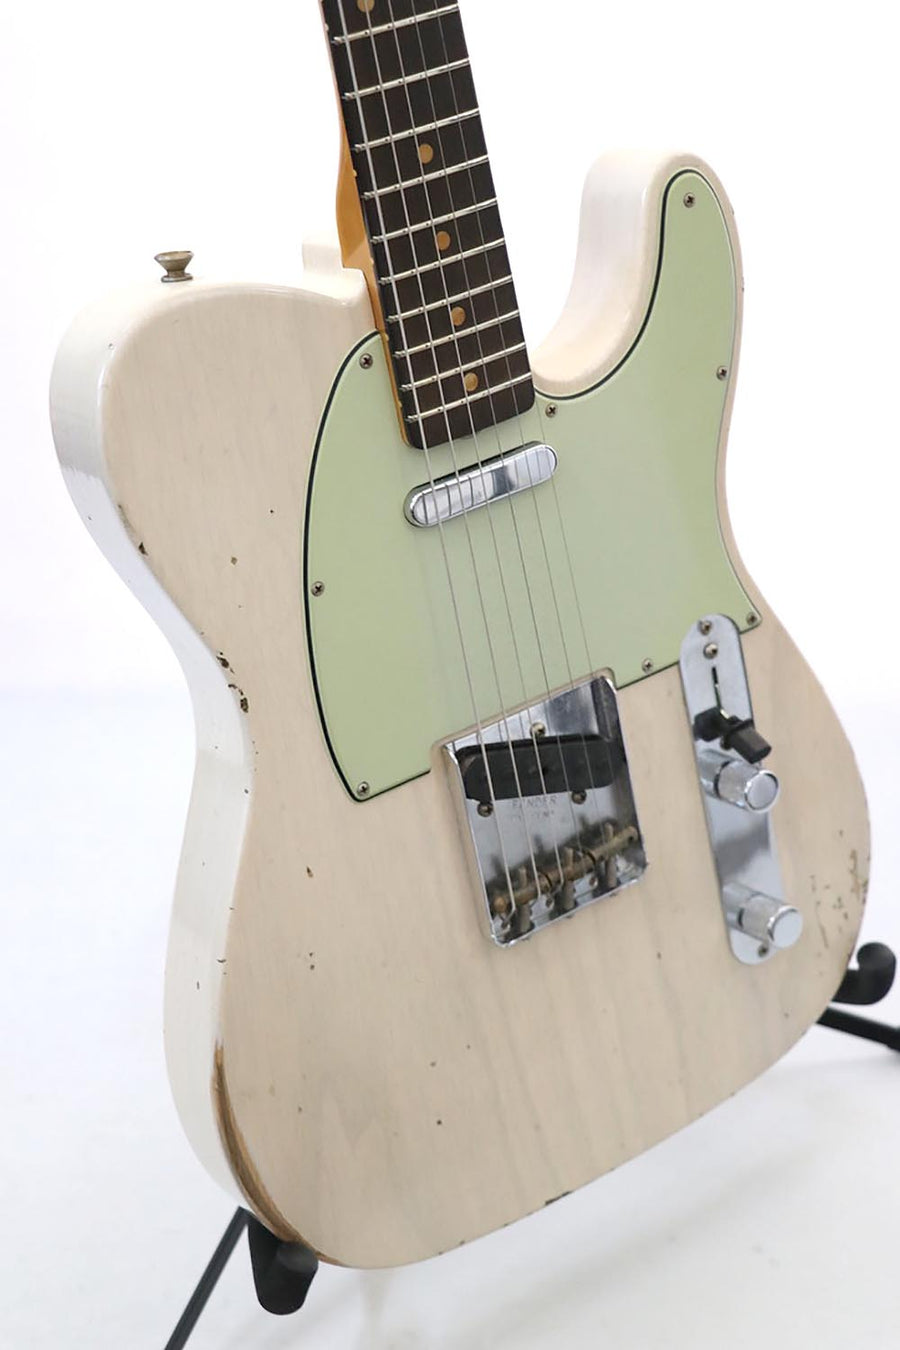 Fender Custom Shop Ltd Ed '63 Telecaster Ash Body Journeyman Relic Aged white Blonde